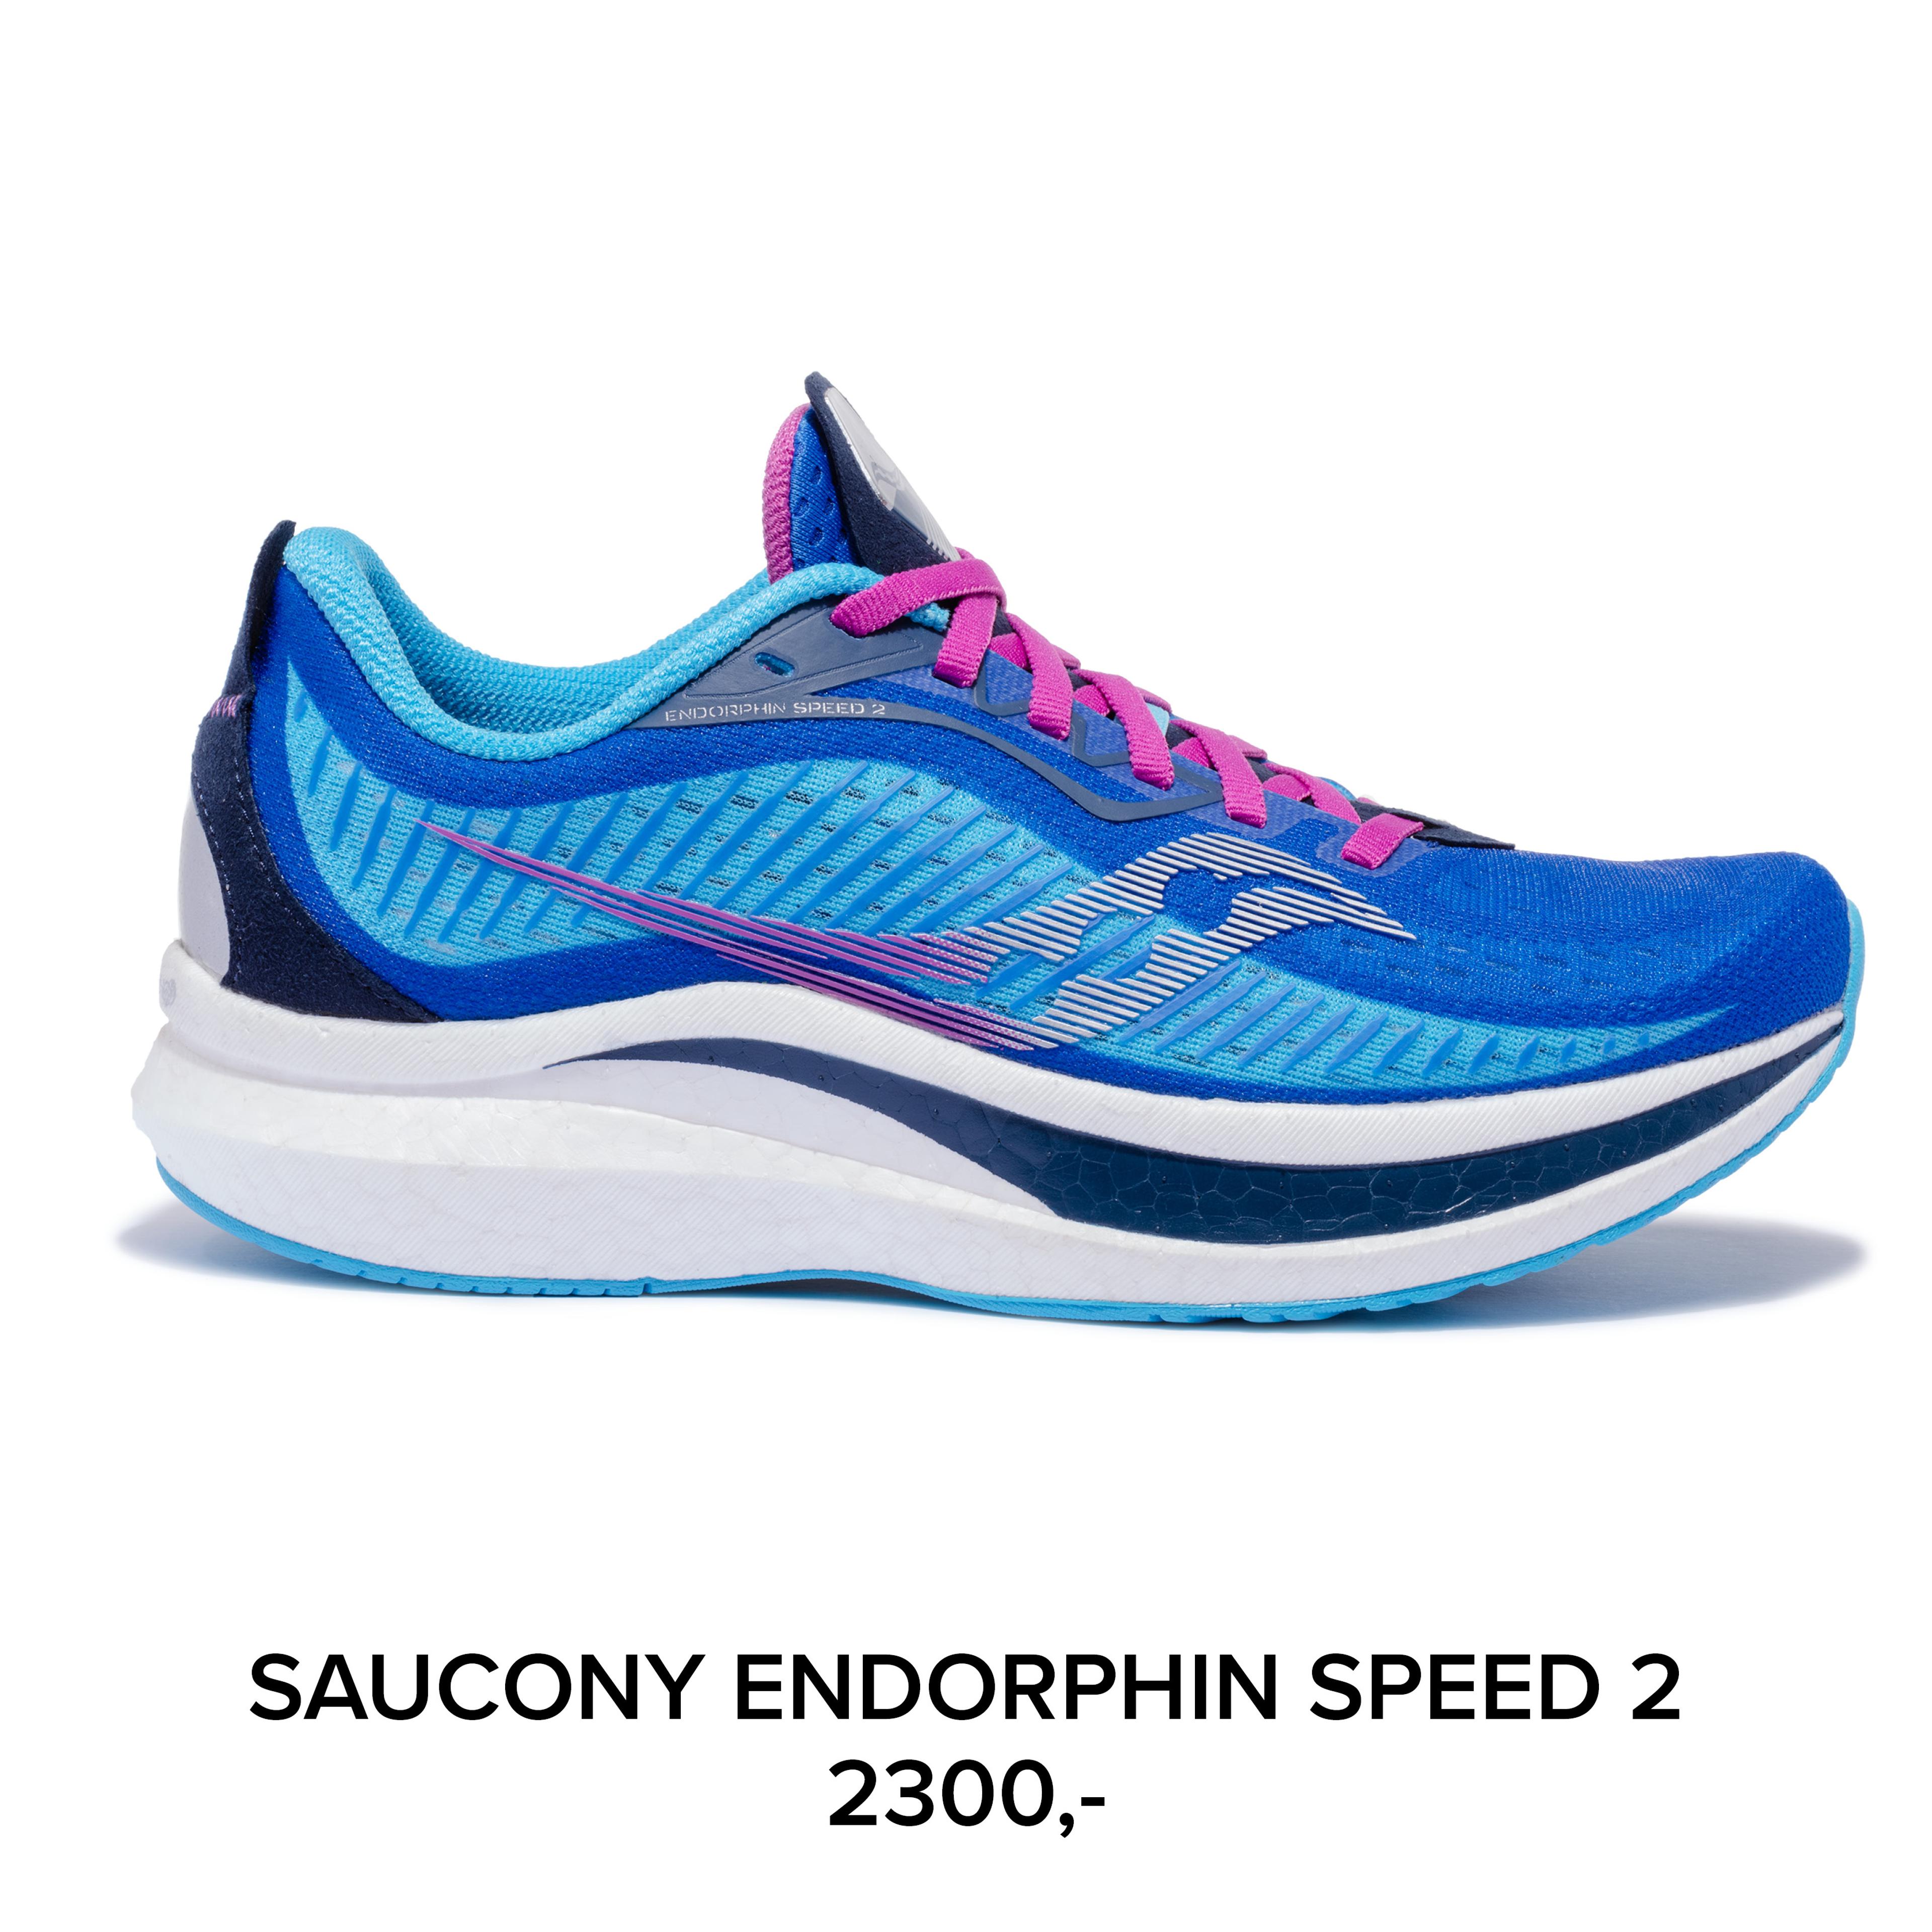 Saucony Endorphin Speed 2